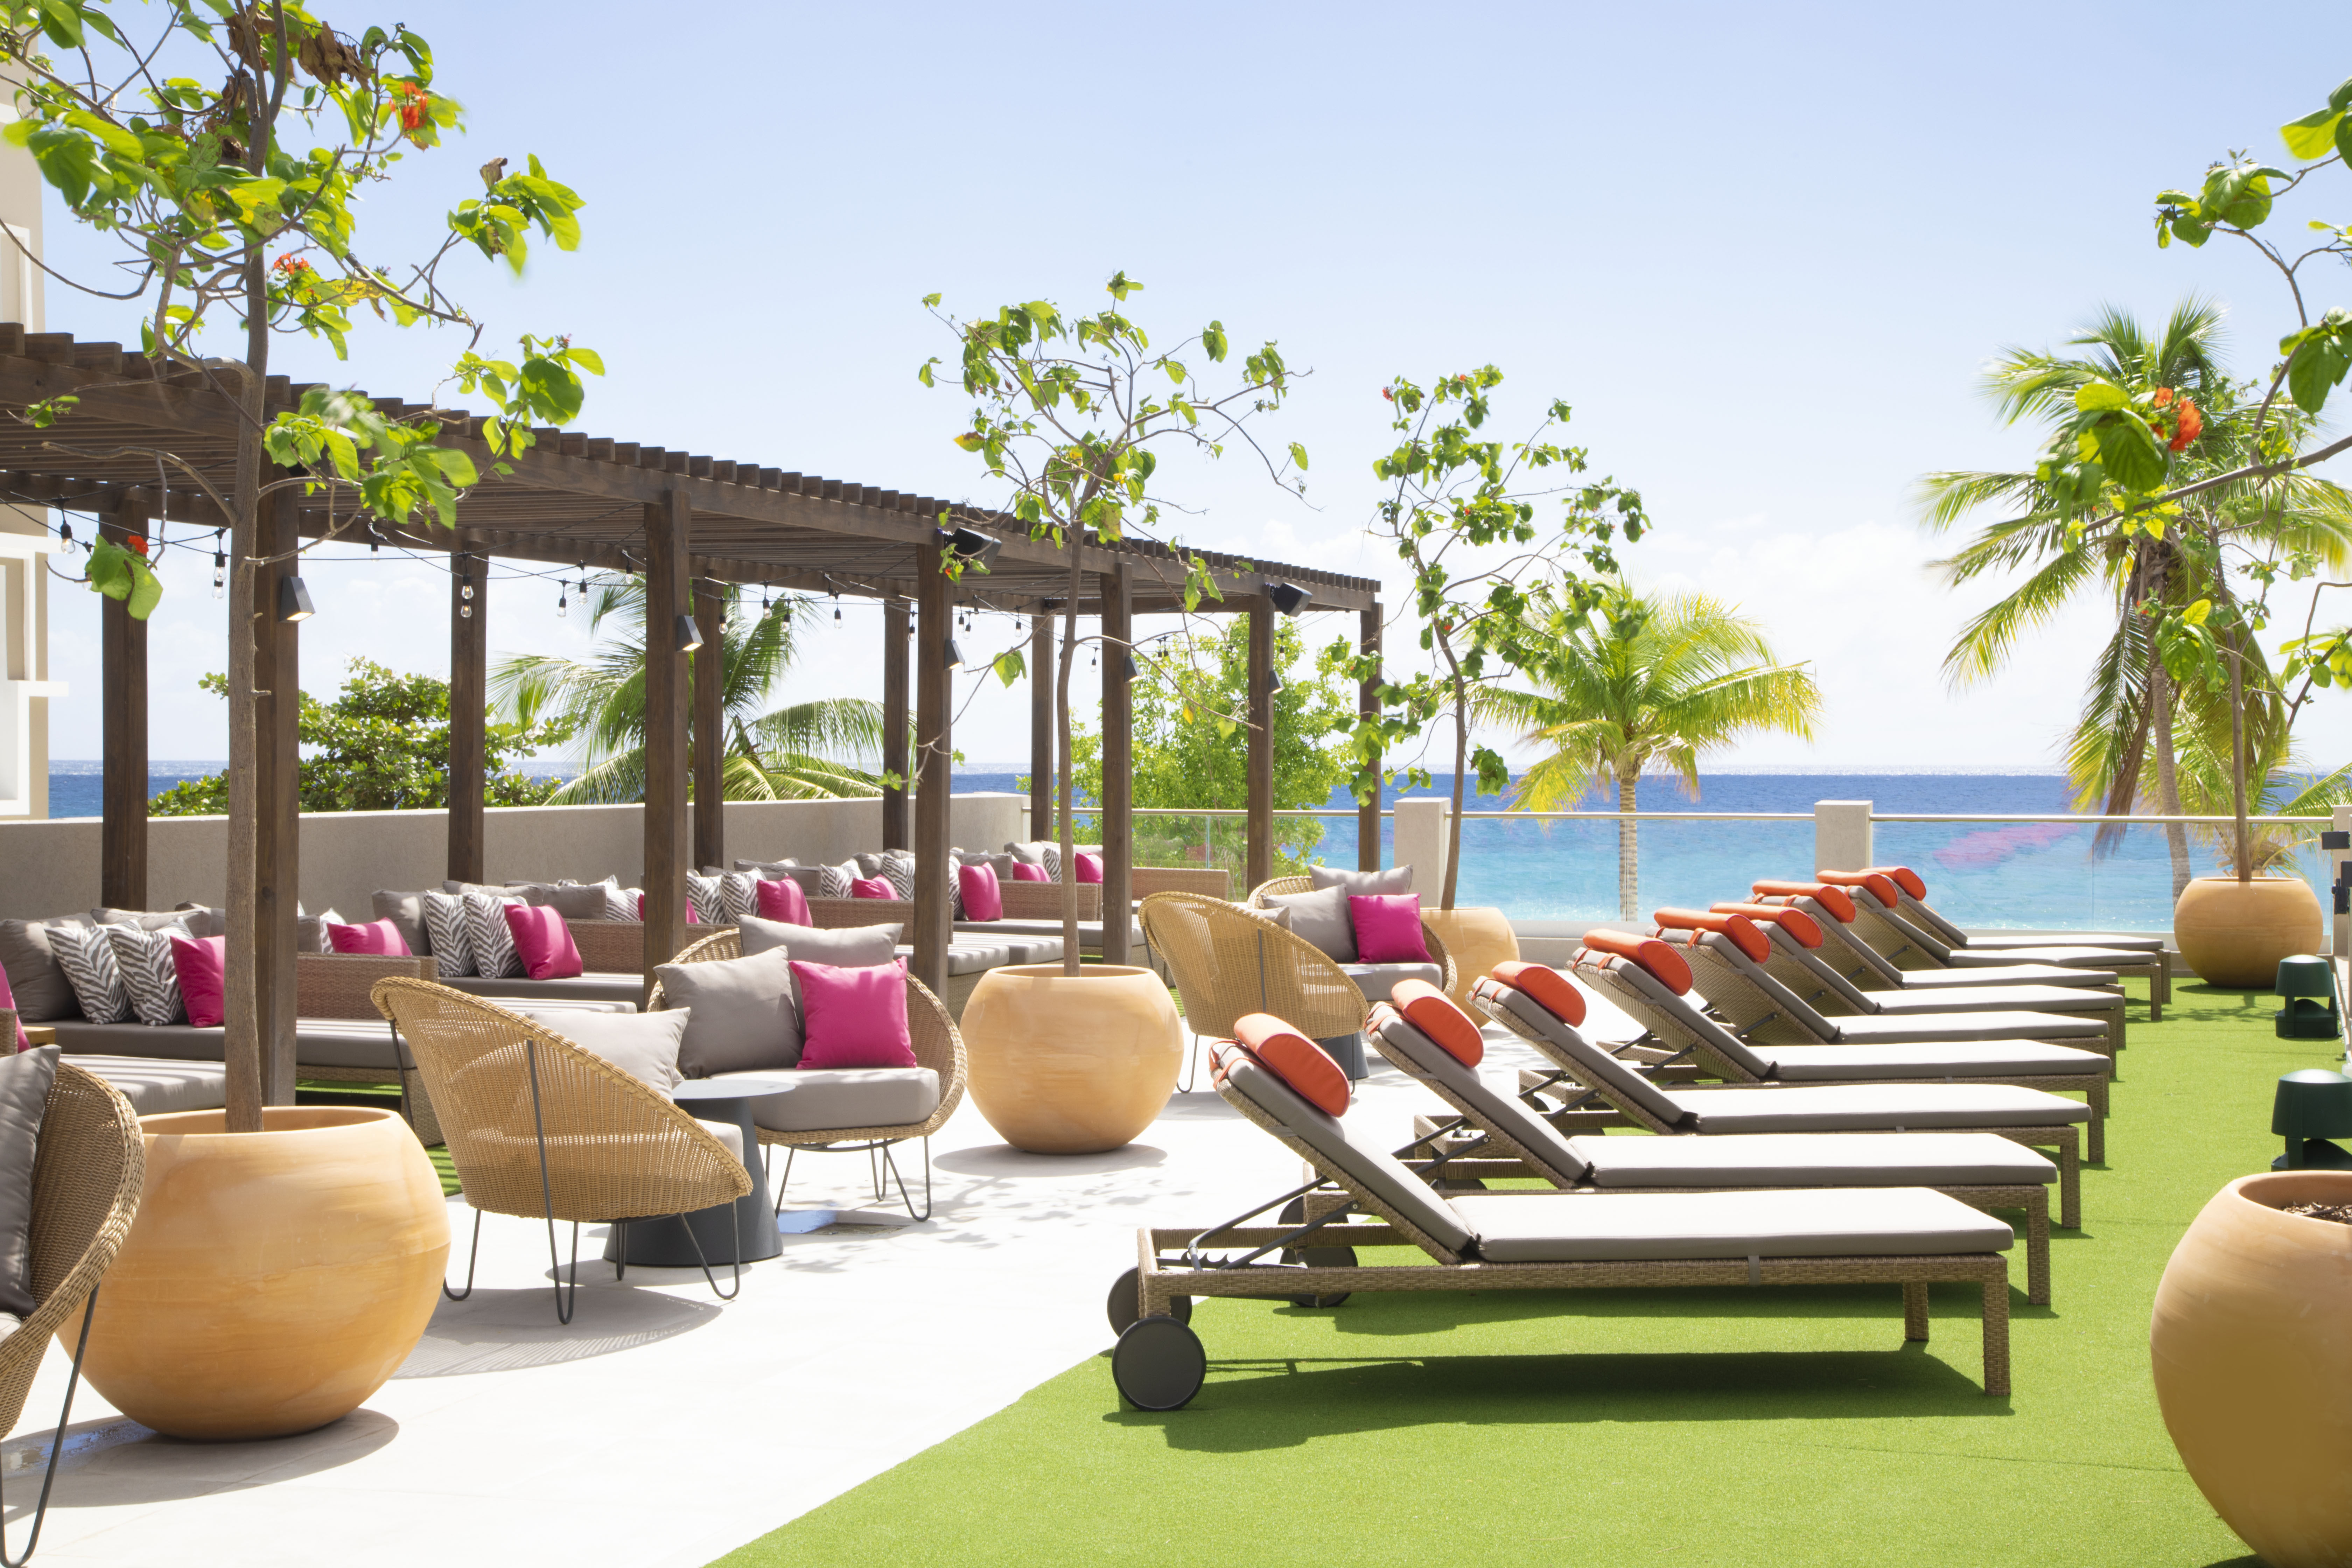 O2 Beach Club & Spa firmy Ocean Hotels